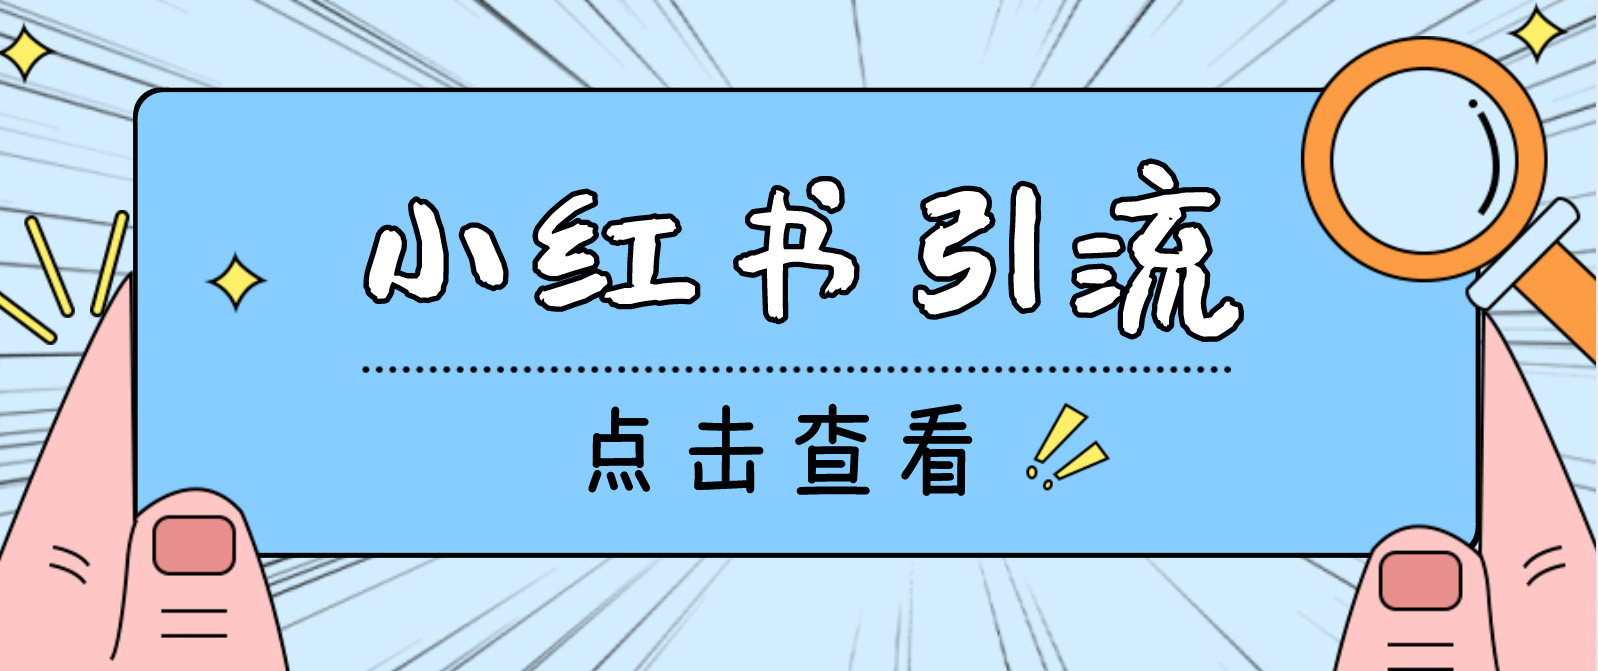 （4684期）【引流必备】光猫-小红书直播间引流【永久脚本+详细教程】